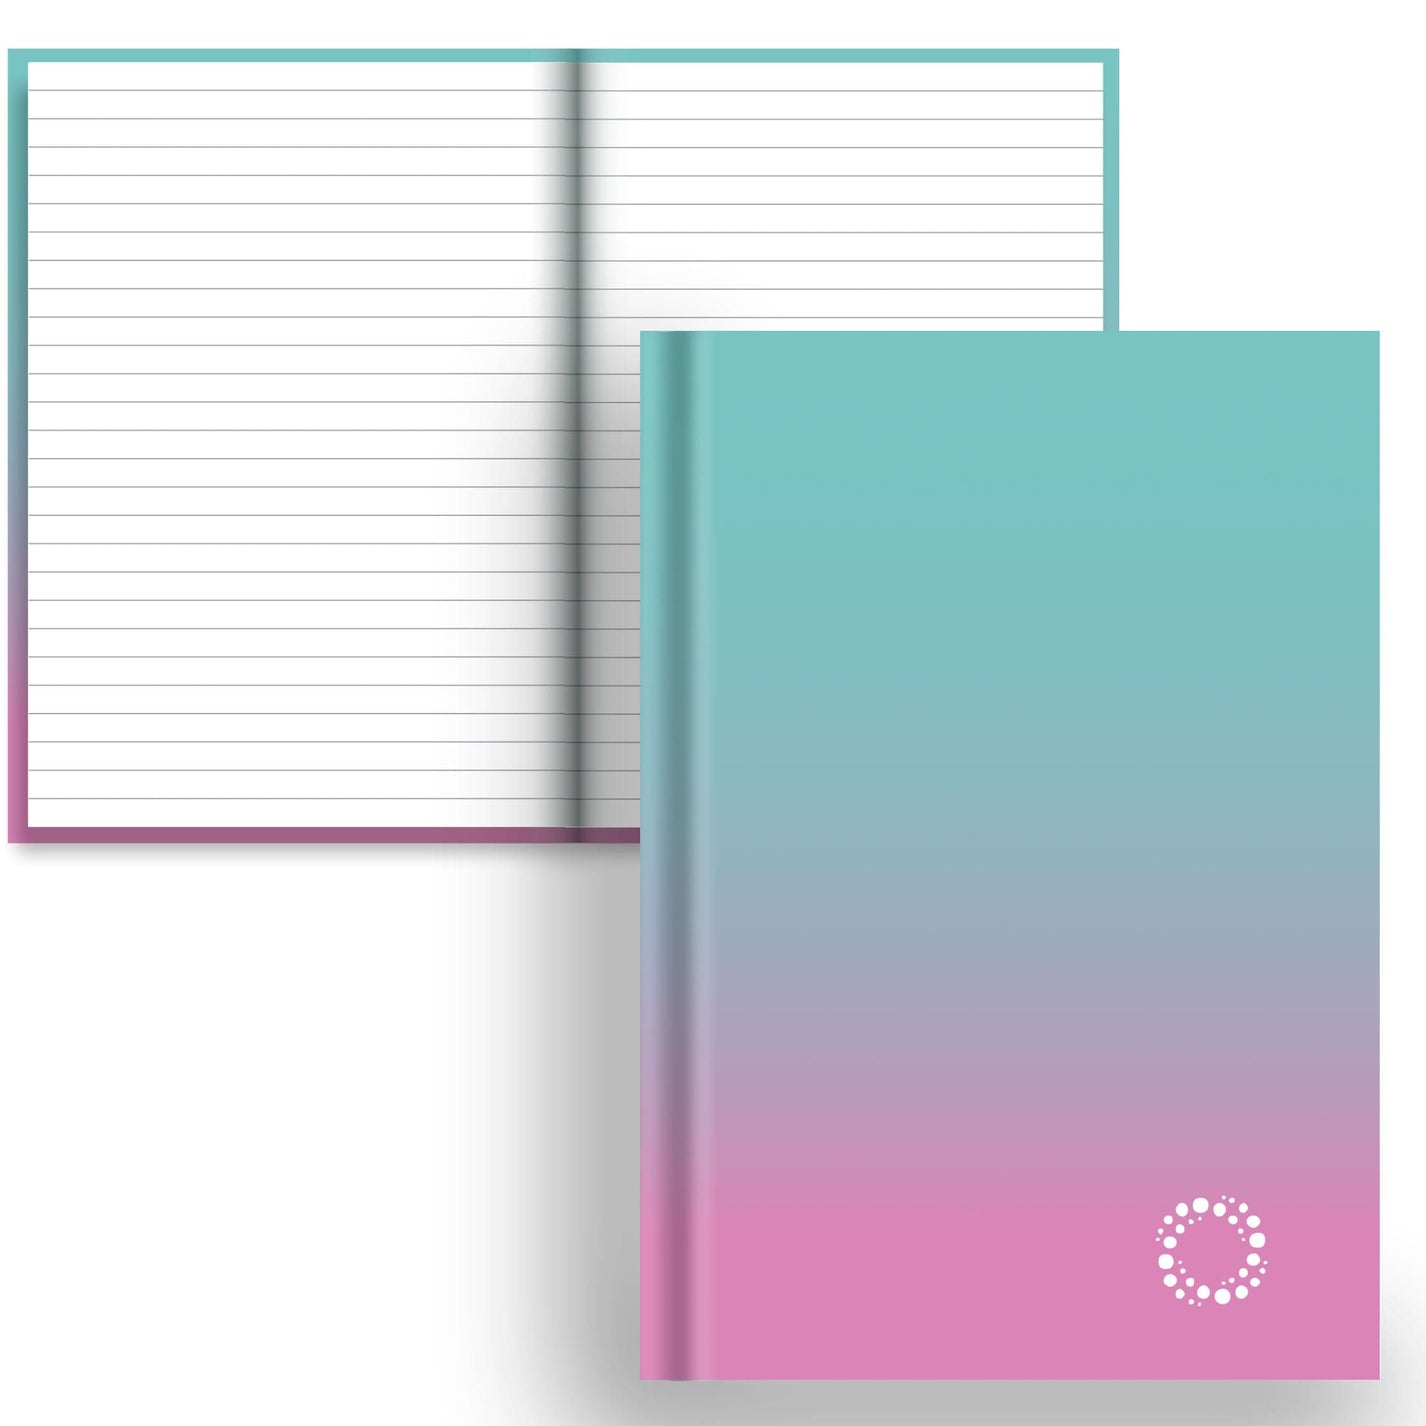 DayDot Journals Colour Fade Lined Paper Aqua and Blossom - A5 Hardback Notebook